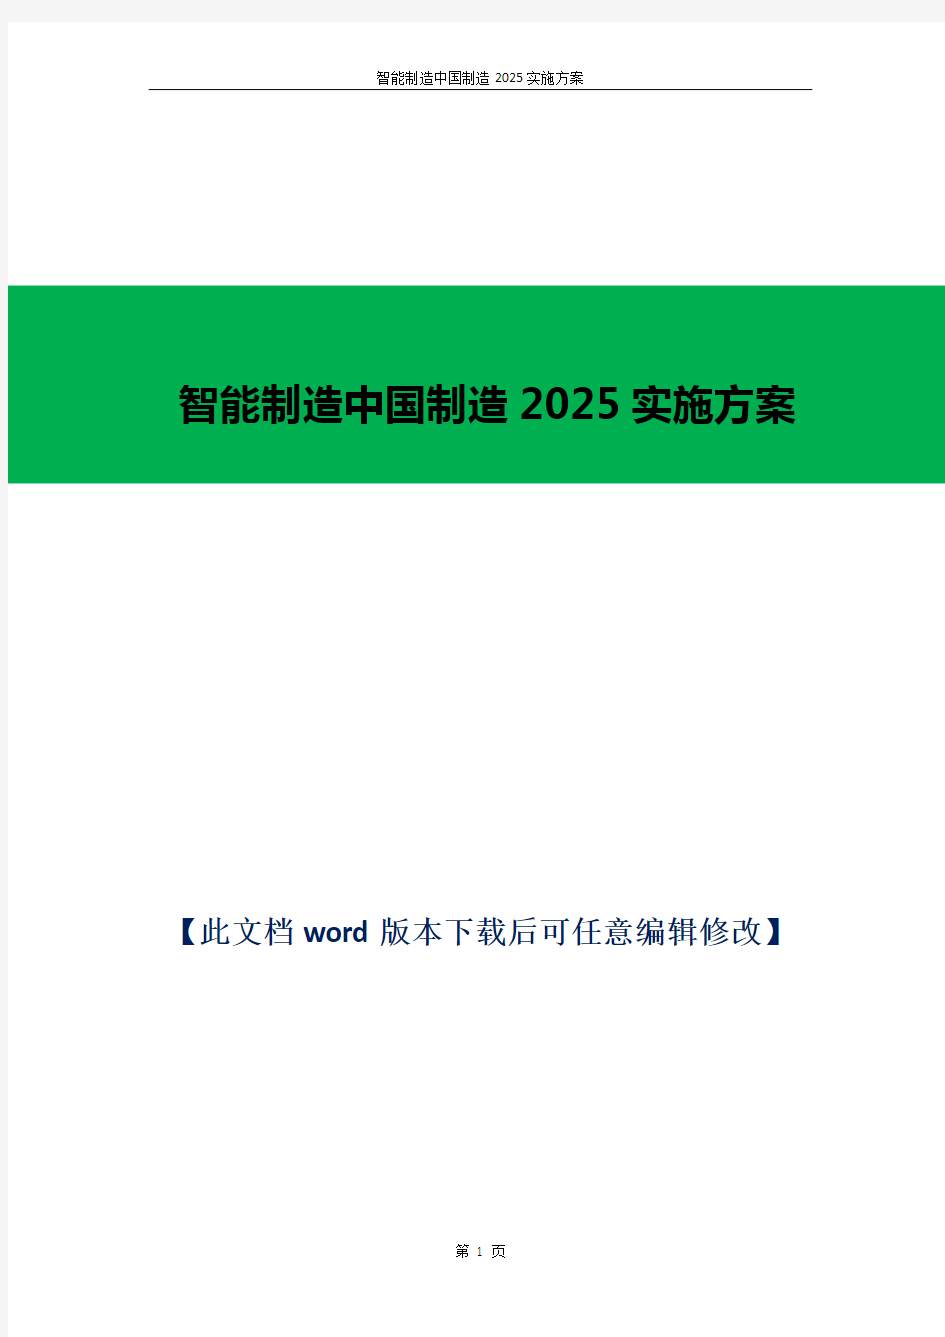 智能制造中国制造2025实施方案